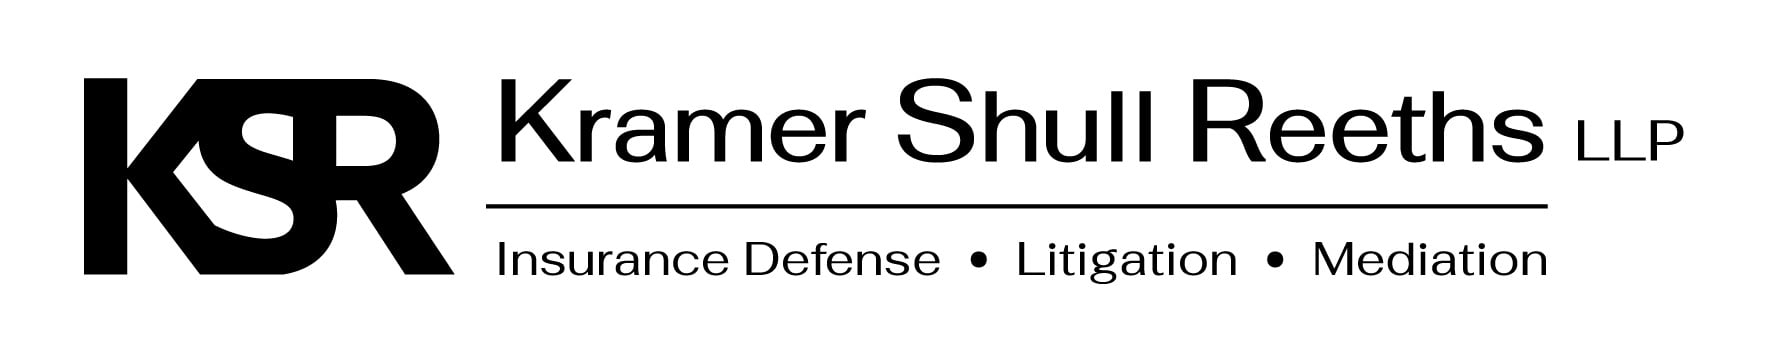 Kramer Shull Reeths LLP | Insurance Defense | Litigation | Mediation